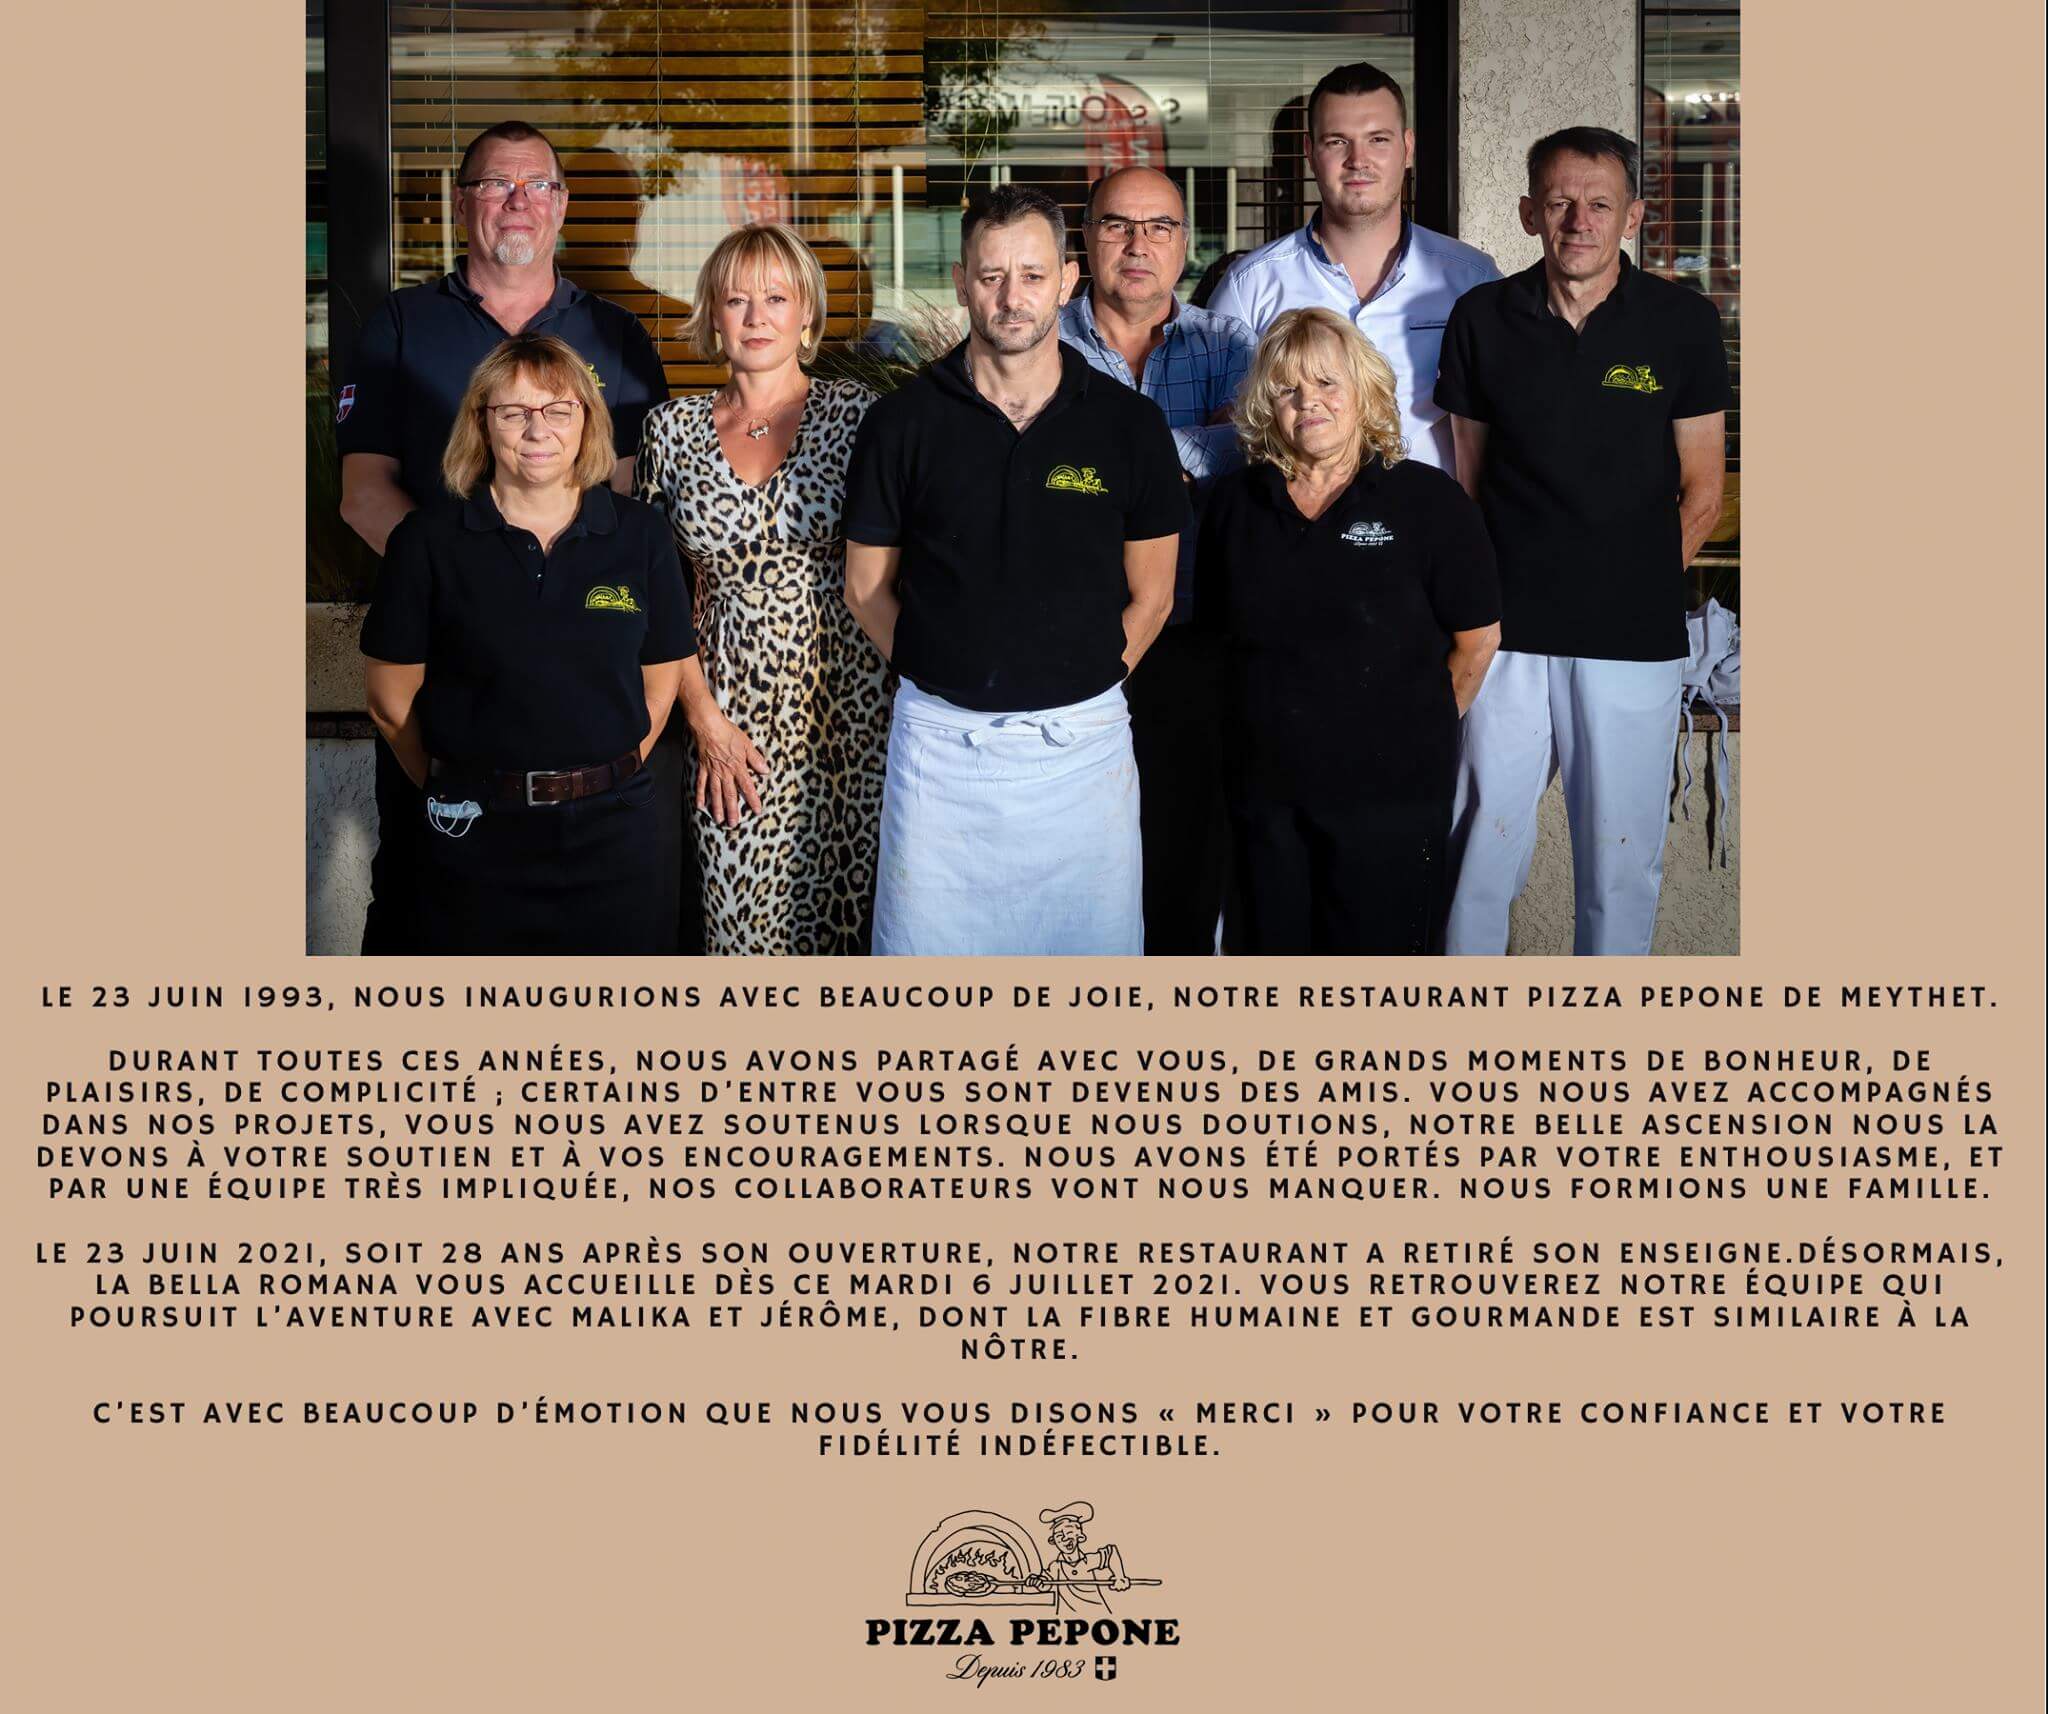 Image de l'équipe du restaurant de Meythet annonçant sa fermeture.